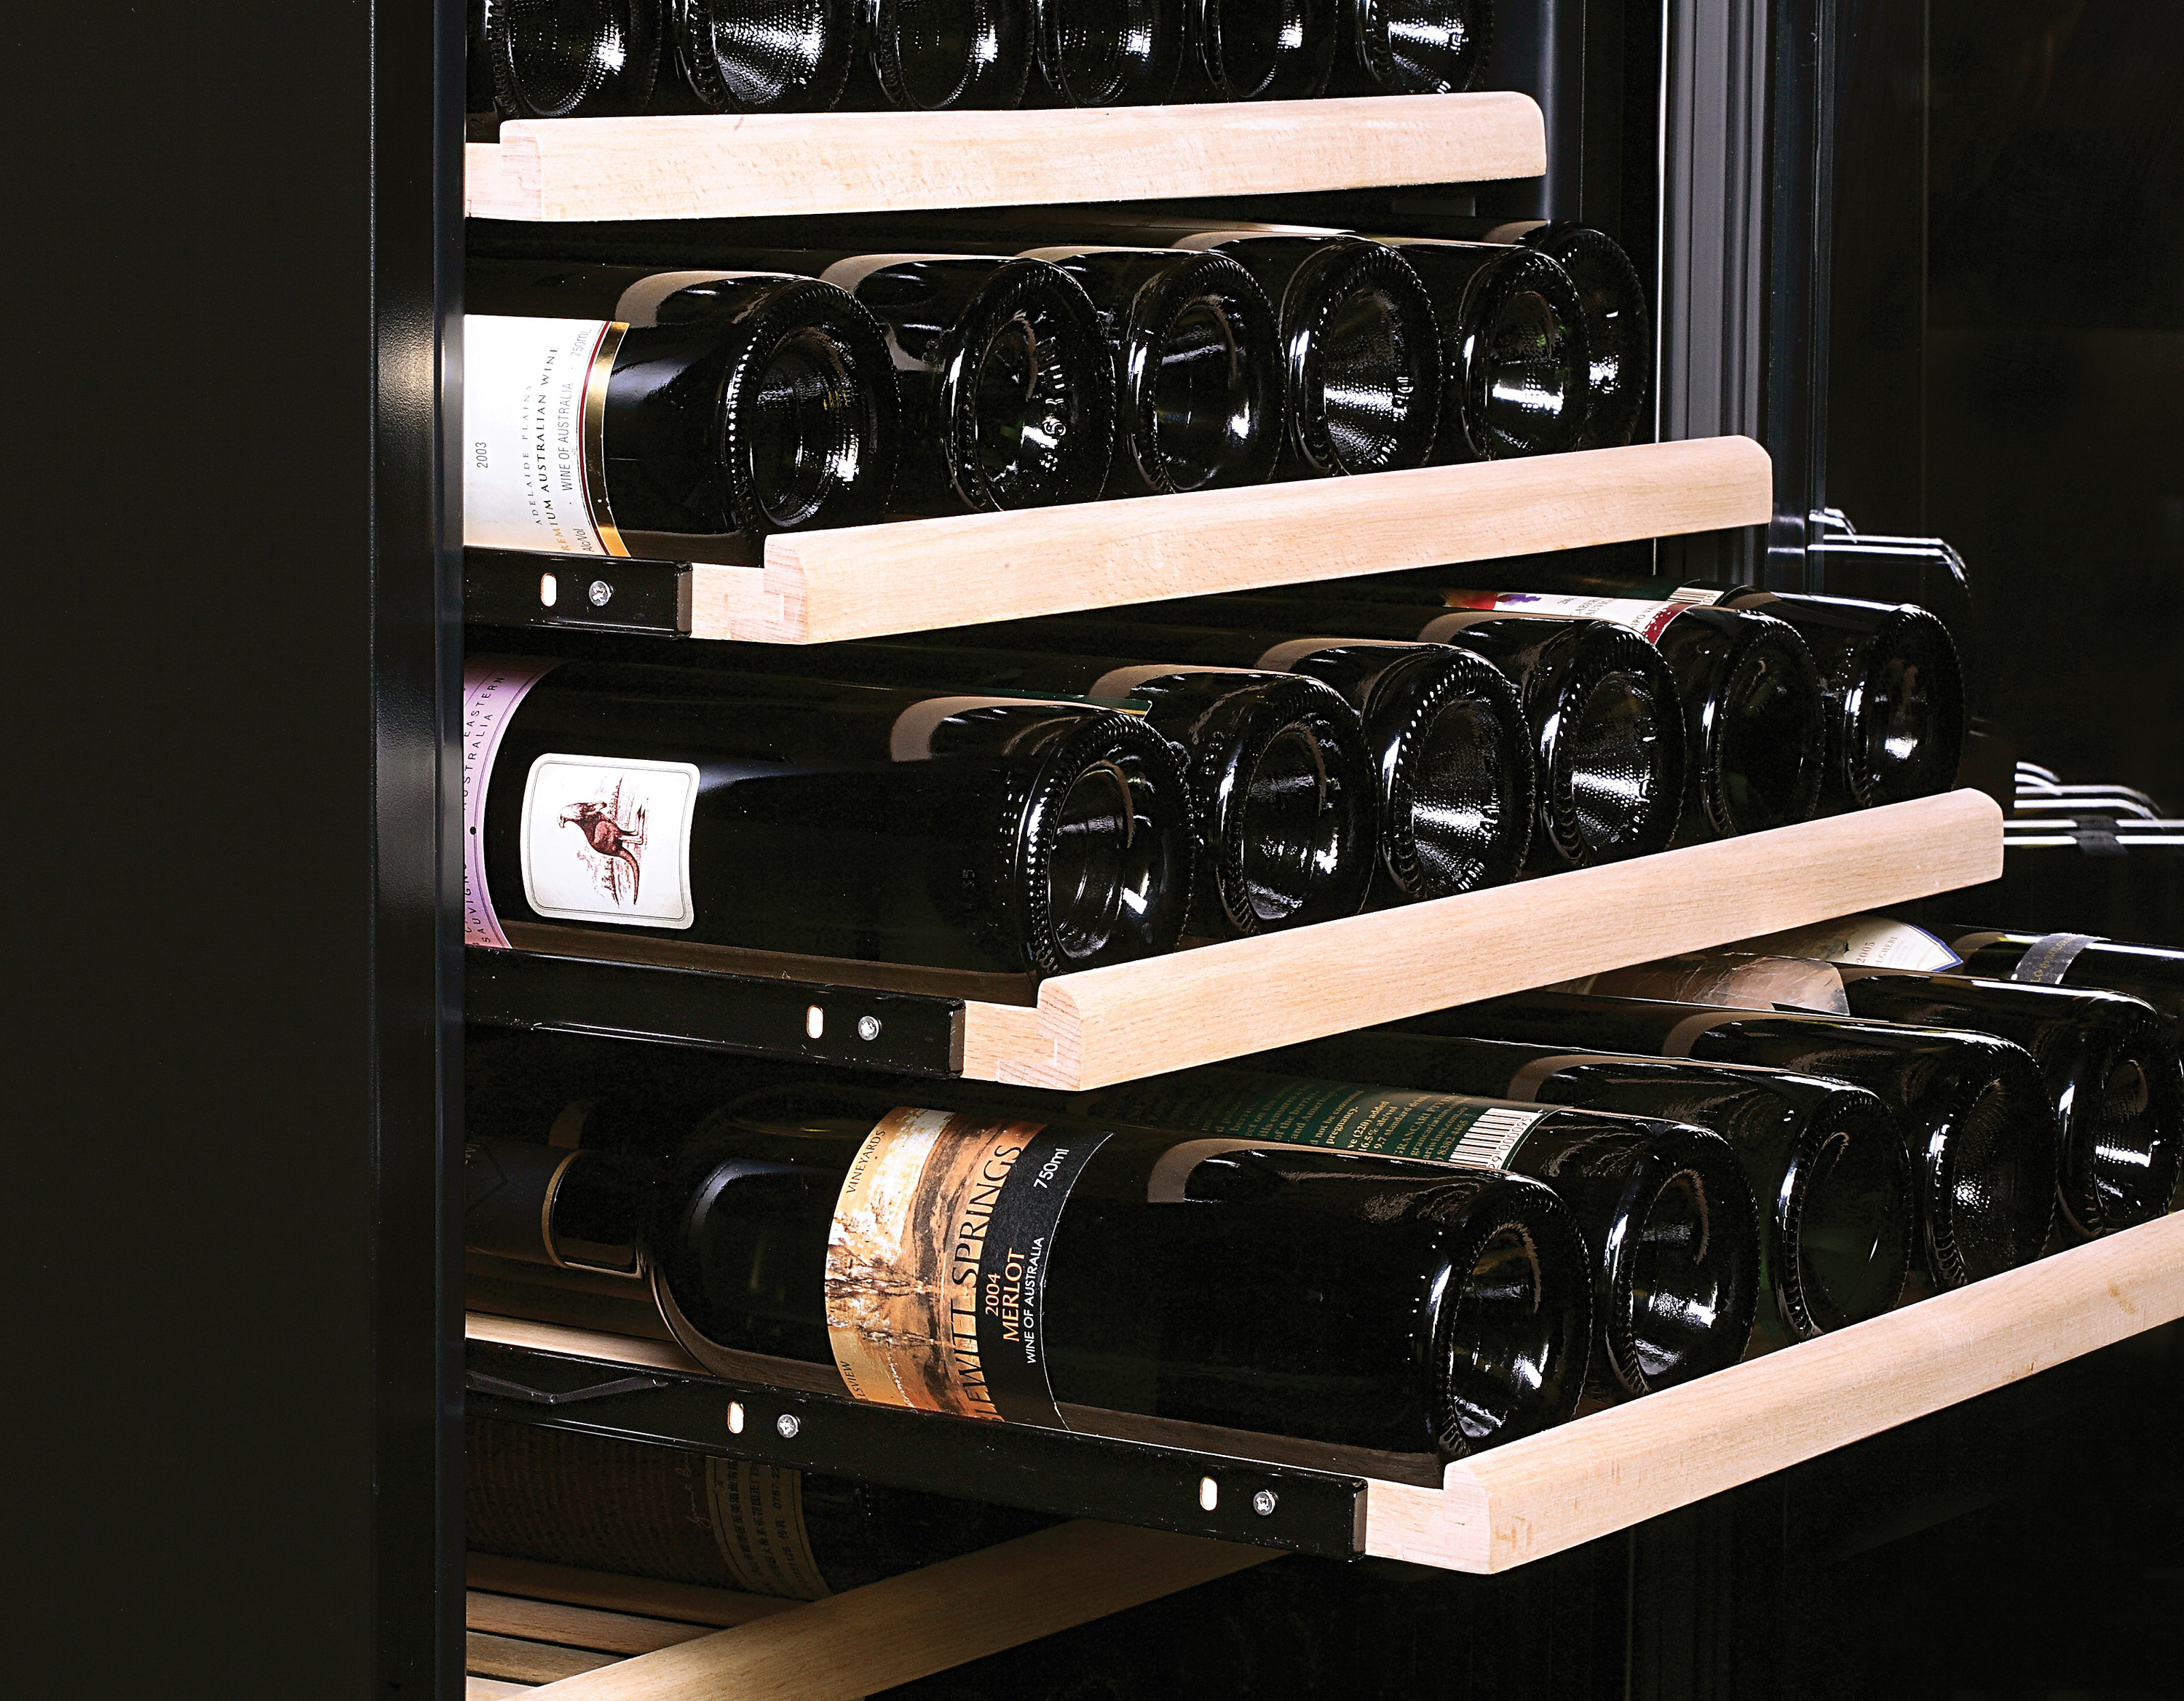 Dvojzónová kompresorová vinotéka Philco PW 166 GD poslúži na správne skladovanie vína s dôrazom na zachovanie jeho jedinečných vlastností.